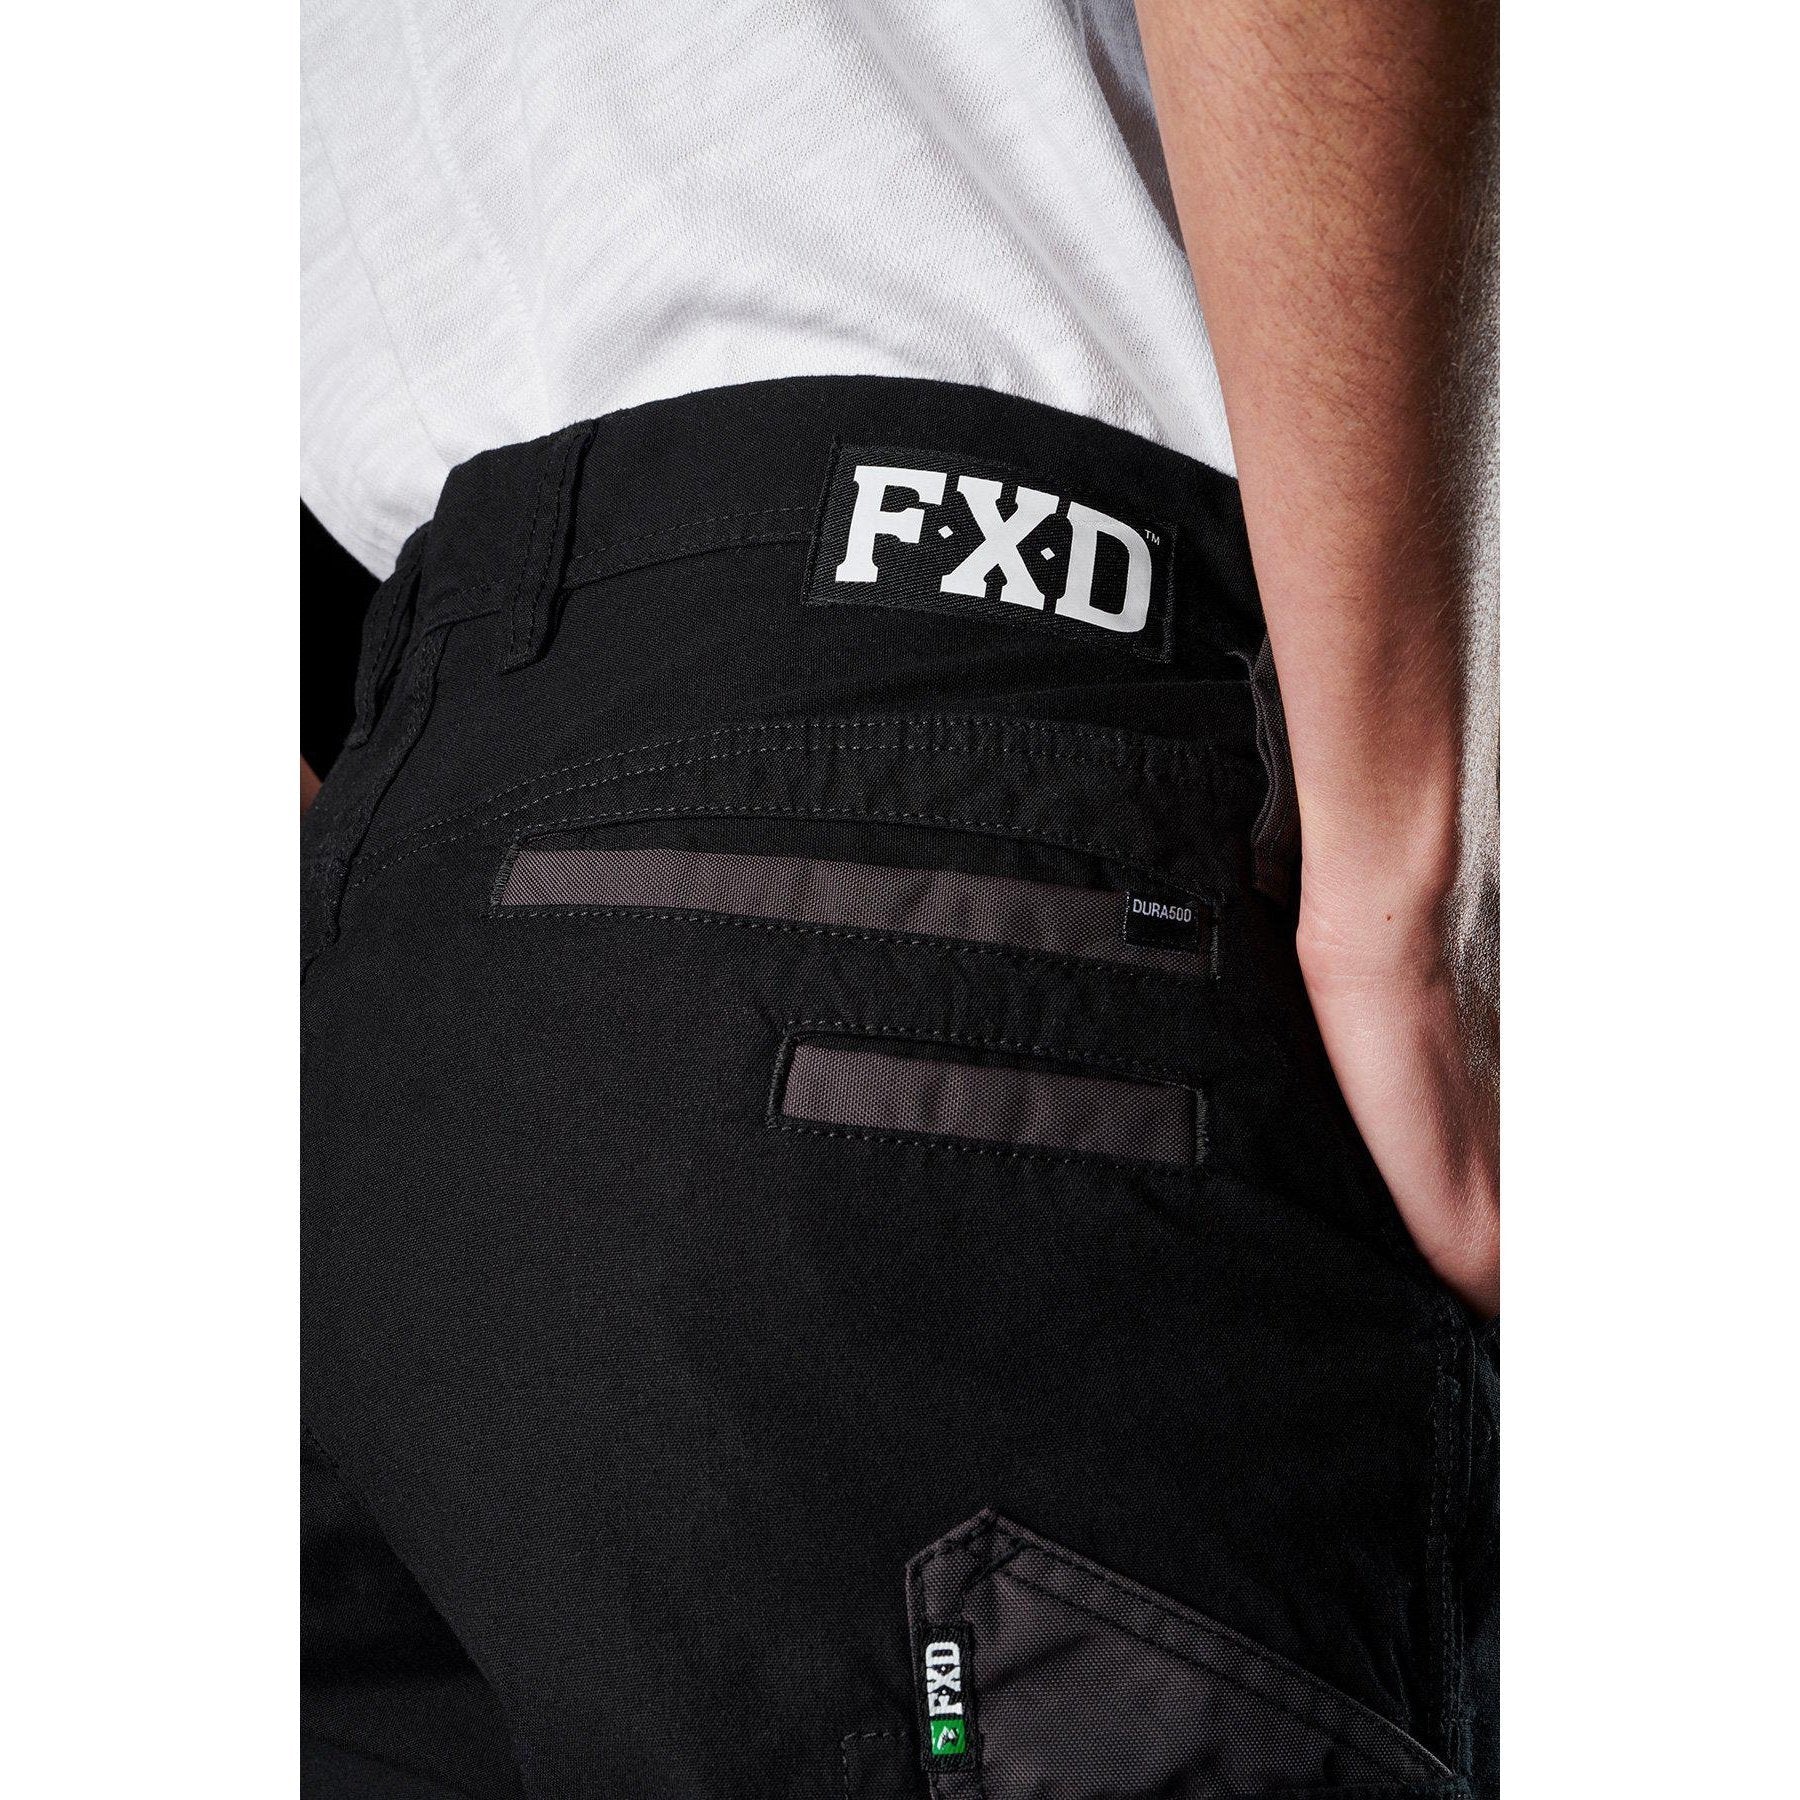 FXD Womens Stretch Work Pants - WP-3W – Womens Workwear